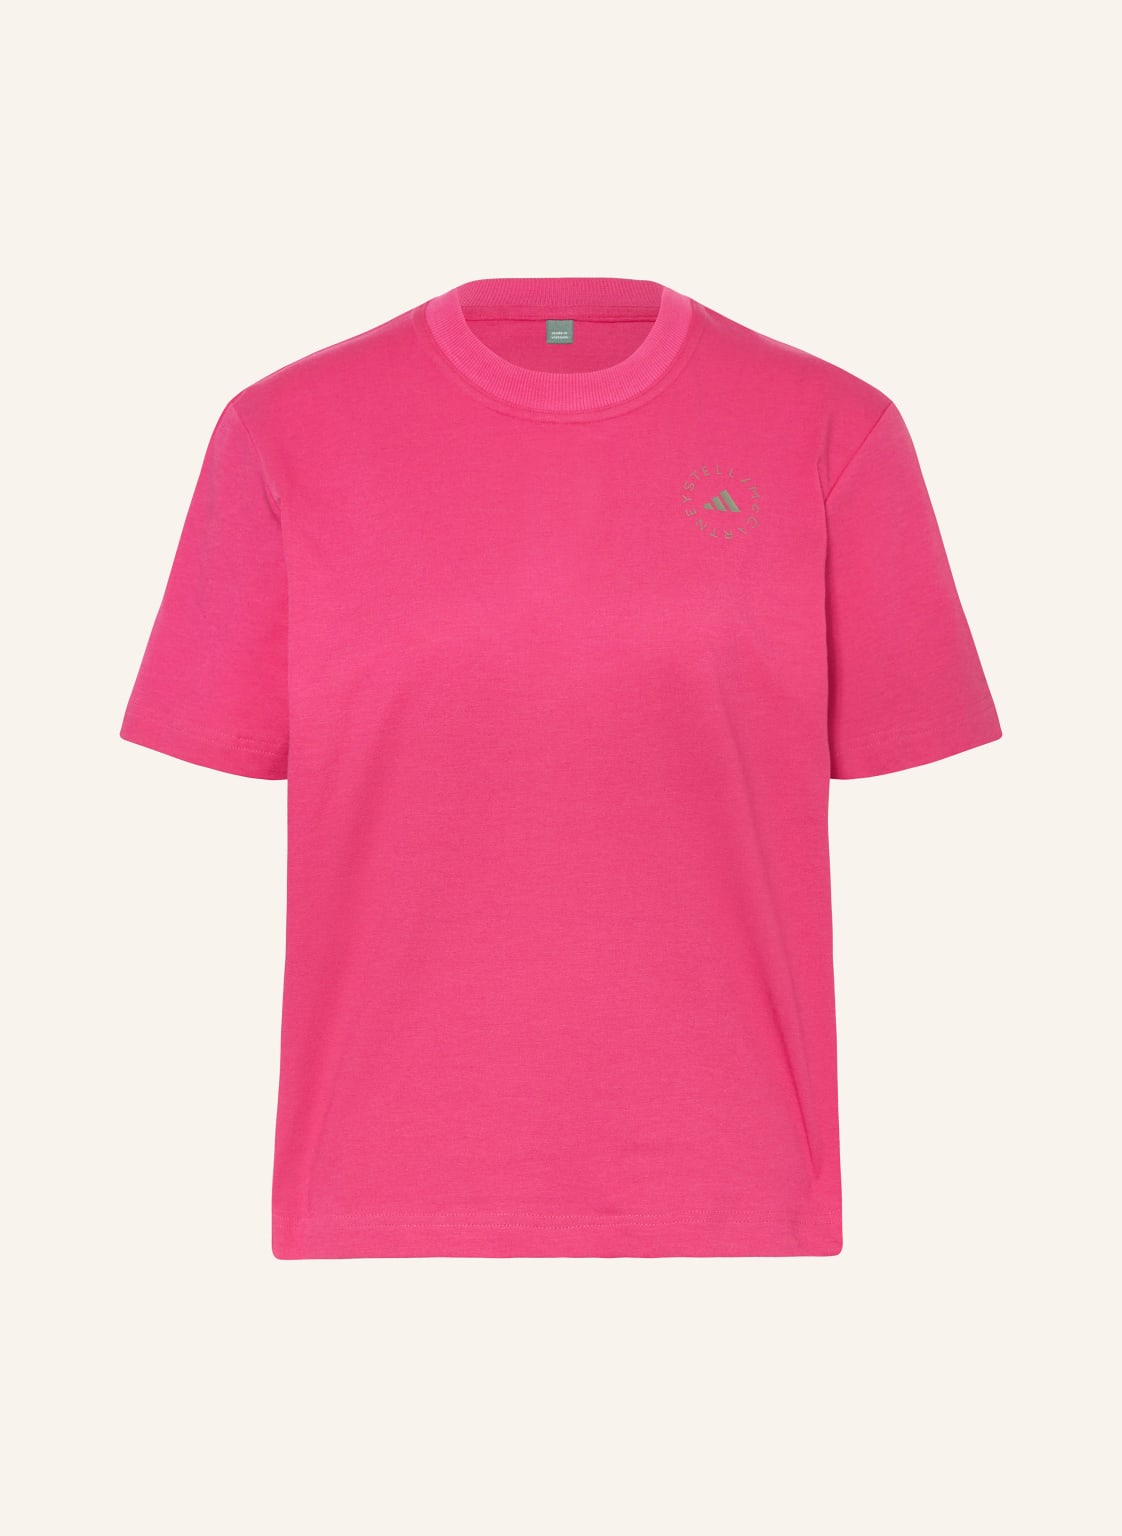 Adidas By Stella Mccartney T-Shirt pink von adidas by stella mccartney